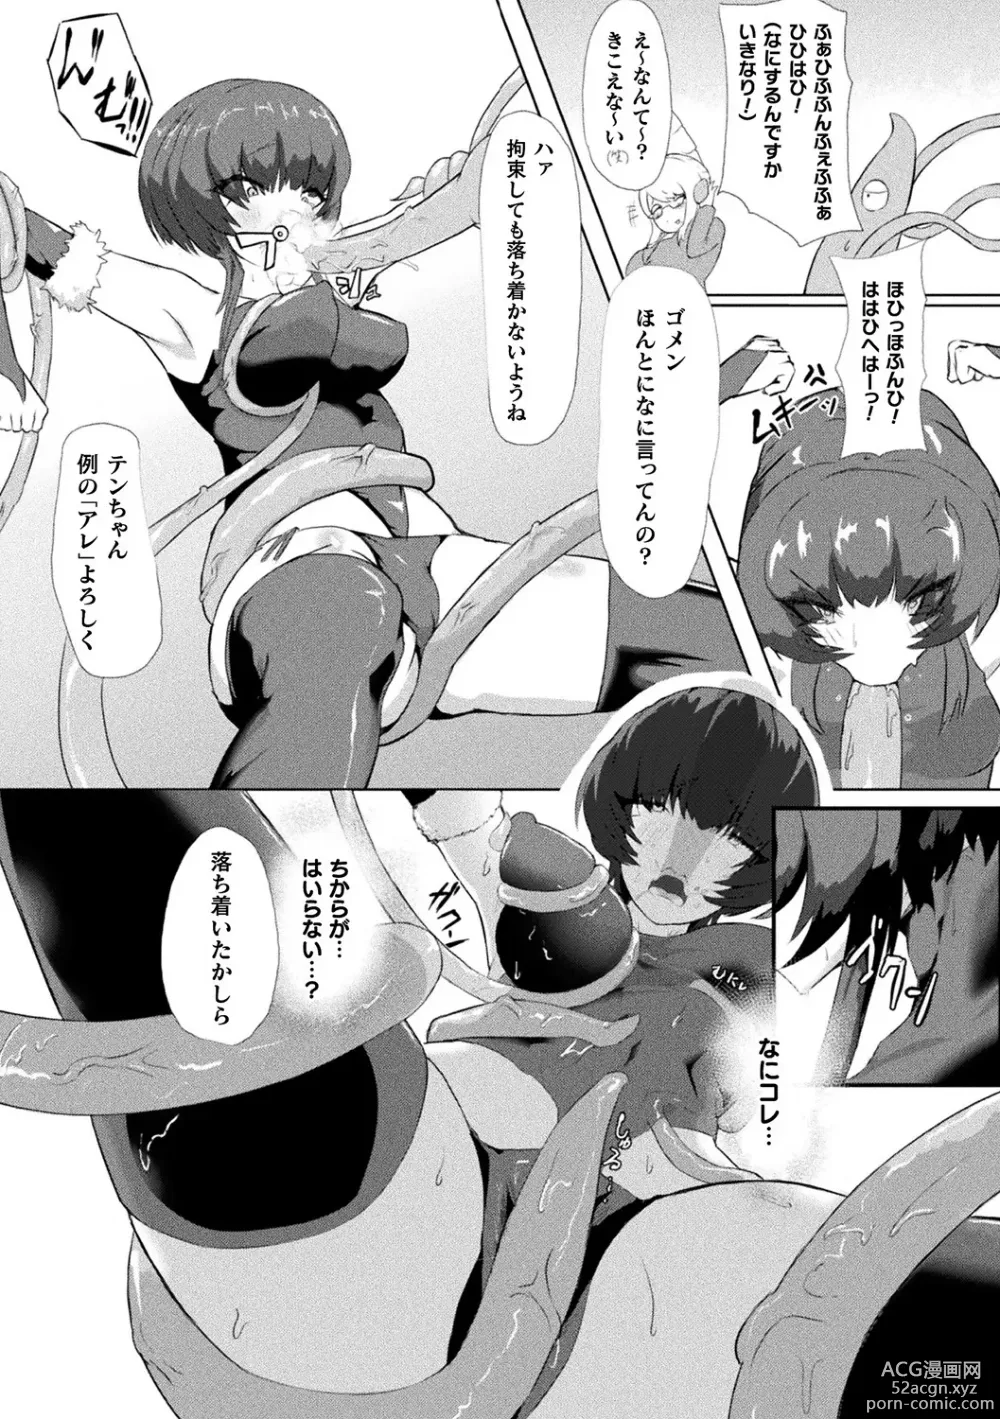 Page 91 of manga Bessatsu Comic Unreal AI ni Wakaraserareru Jinrui Hen Vol. 2